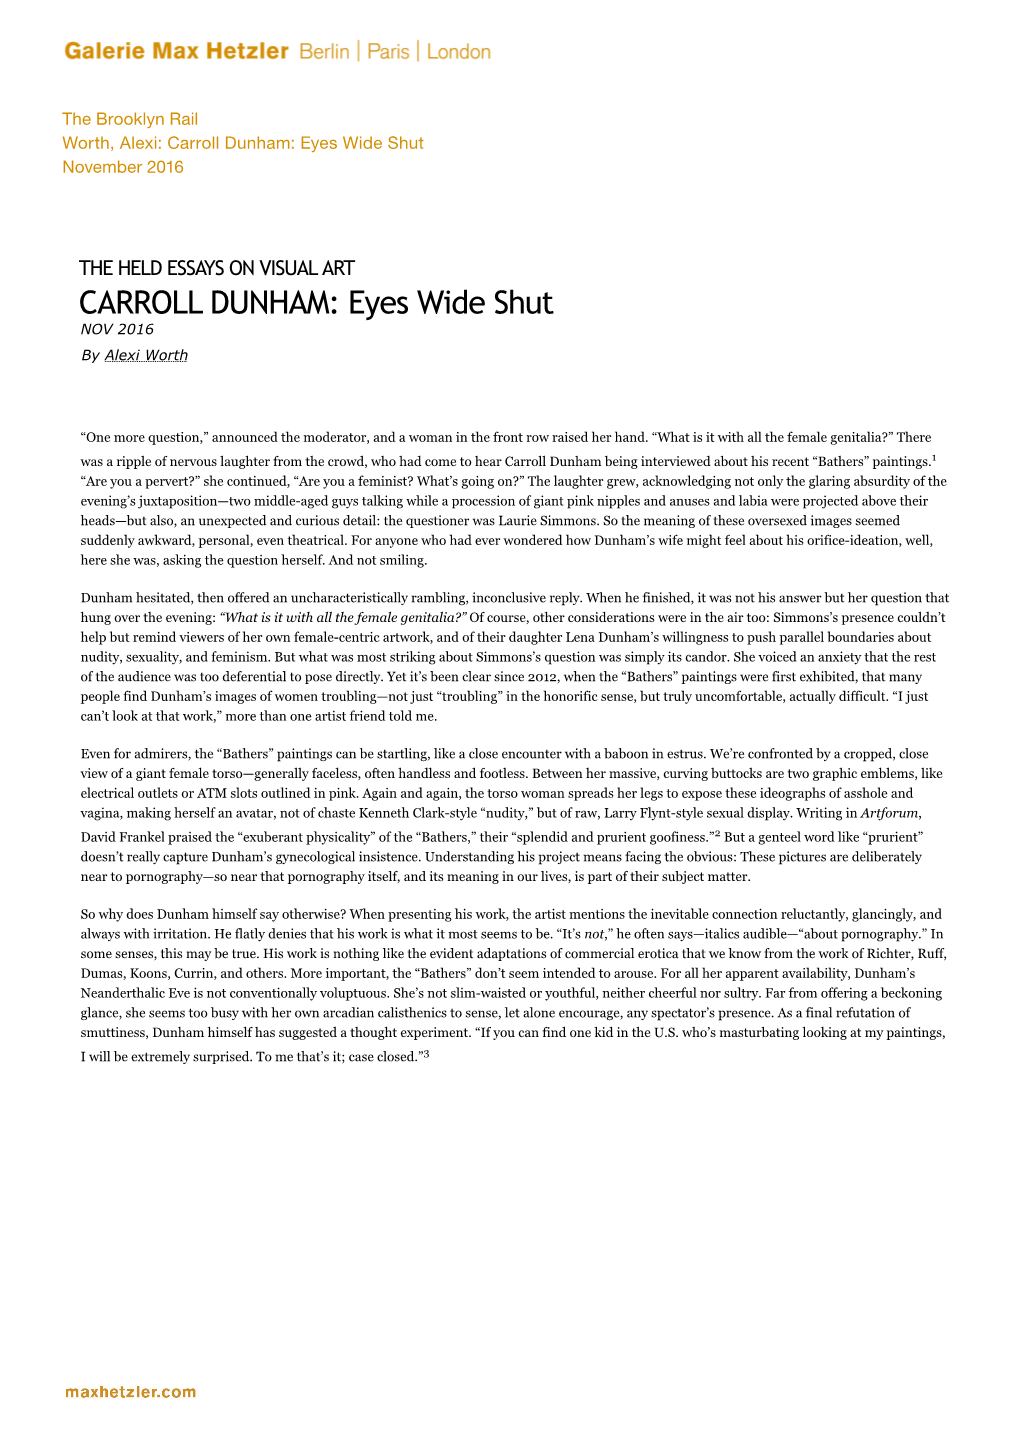 CARROLL DUNHAM: Eyes Wide Shut – the Brooklyn Rail 11.03.21, 13:40